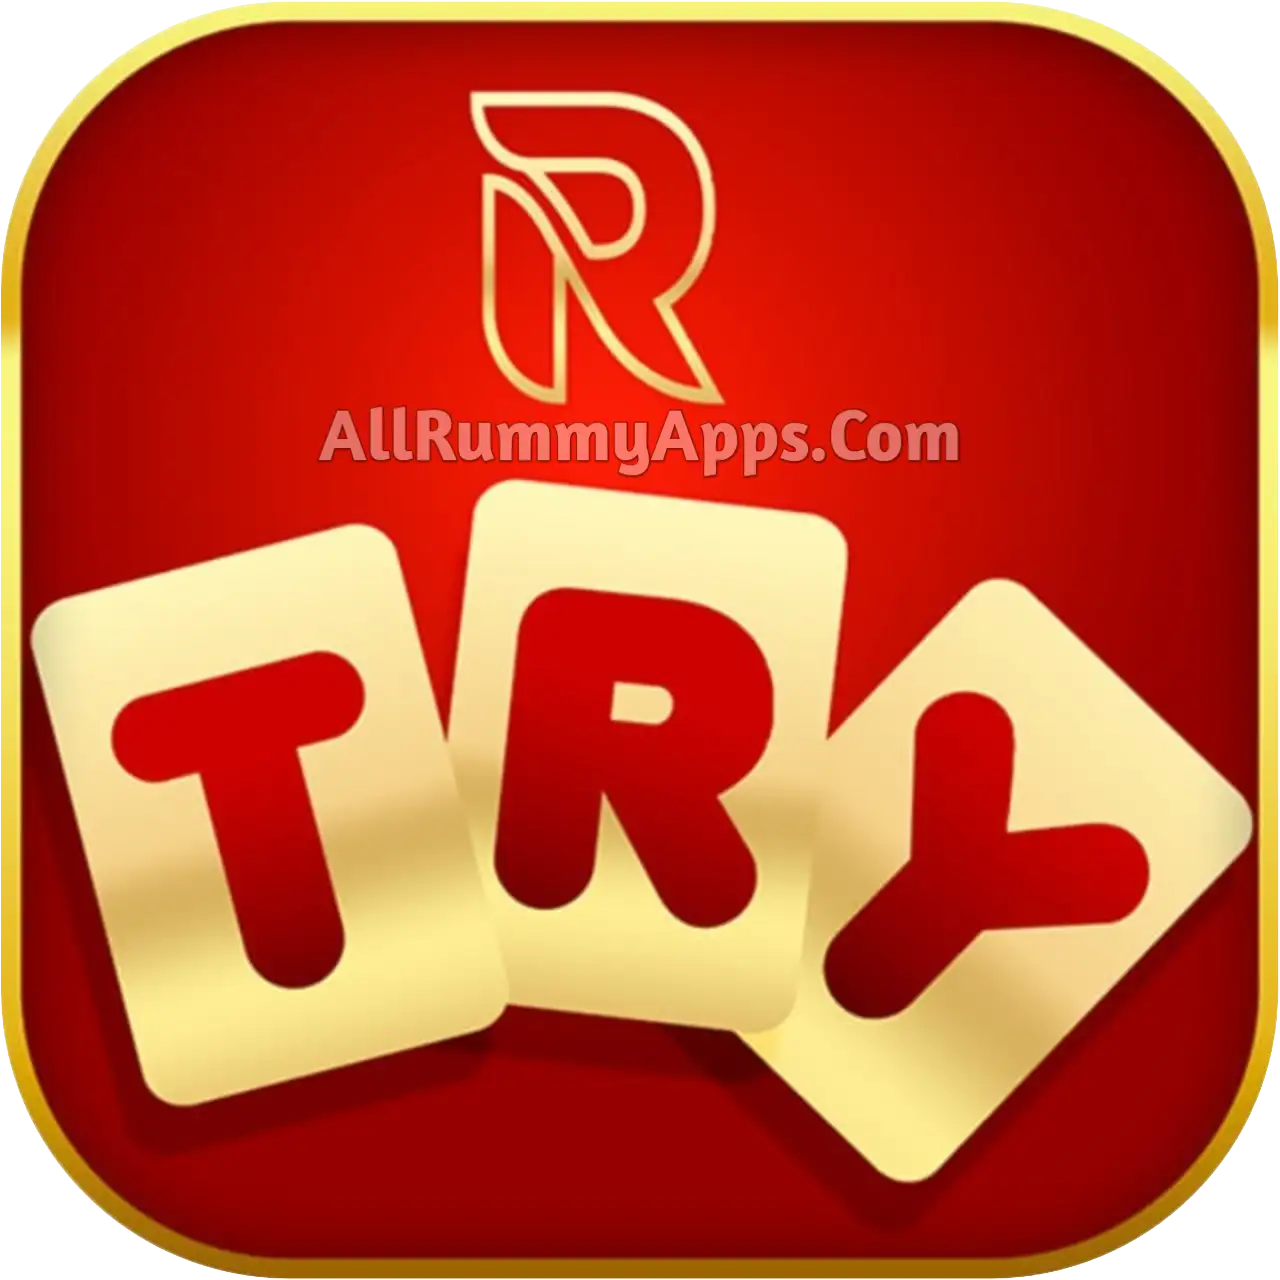 Rummy Try APK - All Rummy App